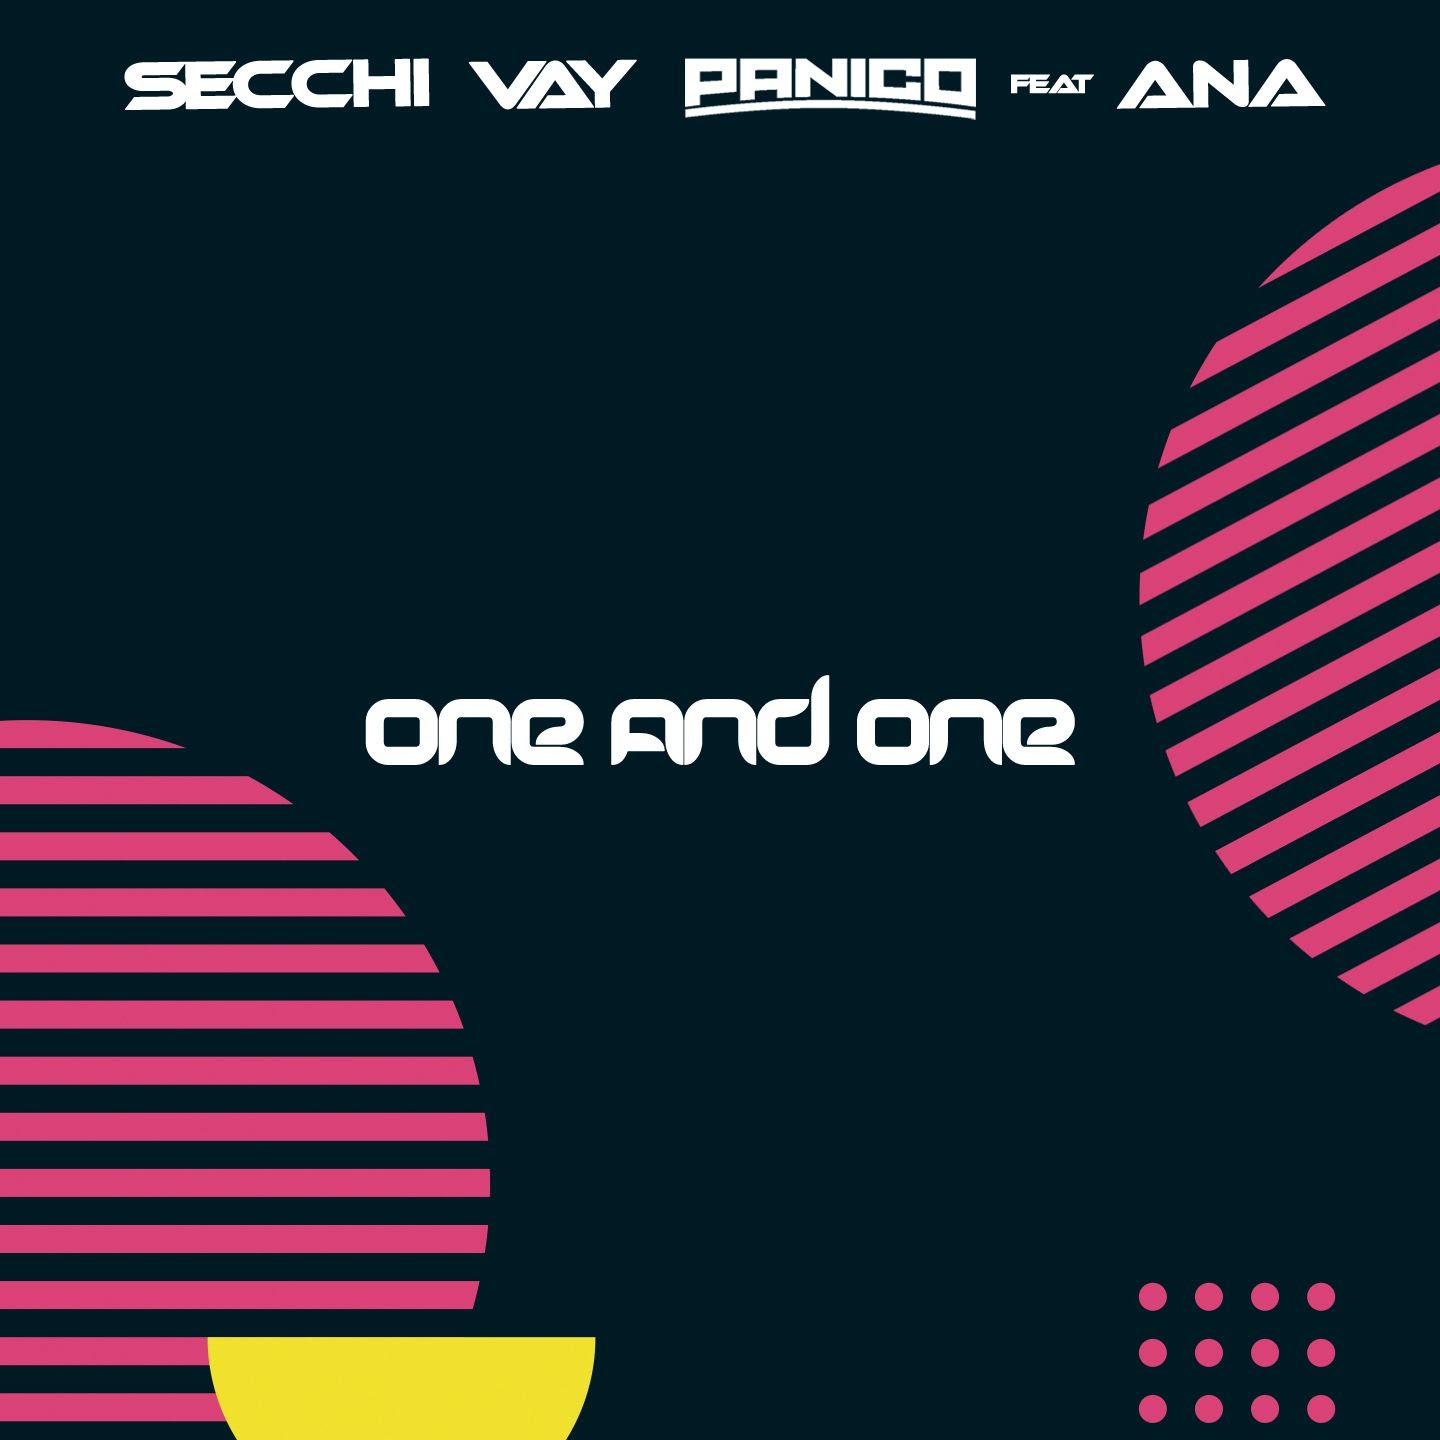 Dal 26 febbraio sarà disponibile in rotazione radiofonica “ONE AND ONE” (Propio/BIT Records), il nuovo brano di SECCHI VAY PANICO che vede il featuring di ANA